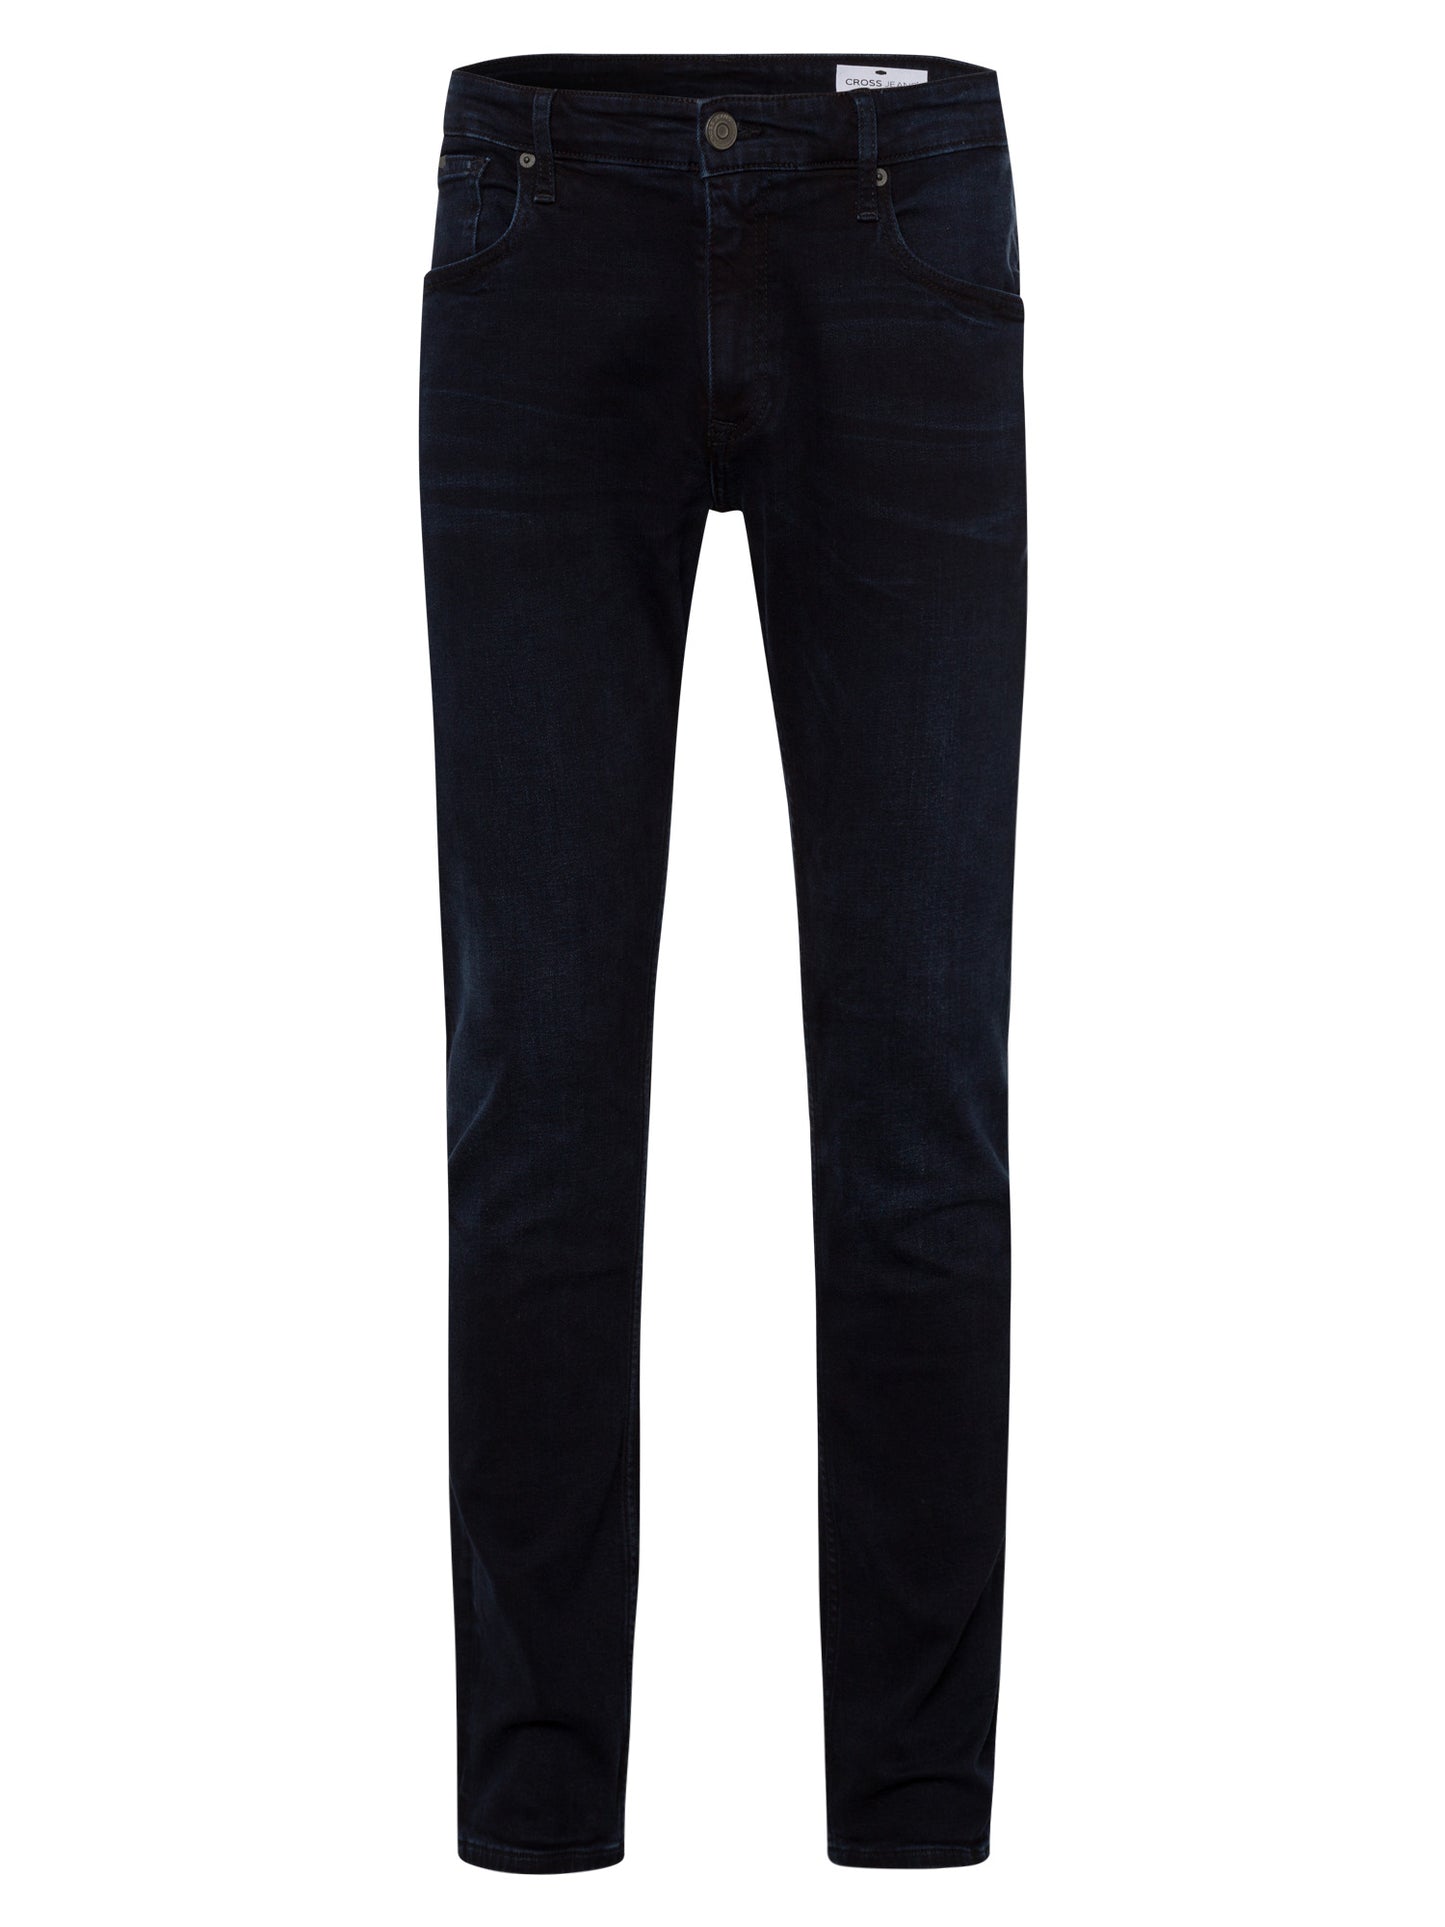 Damien Herren Jeans Slim Fit Regular Waist Straight Leg schwarzblau